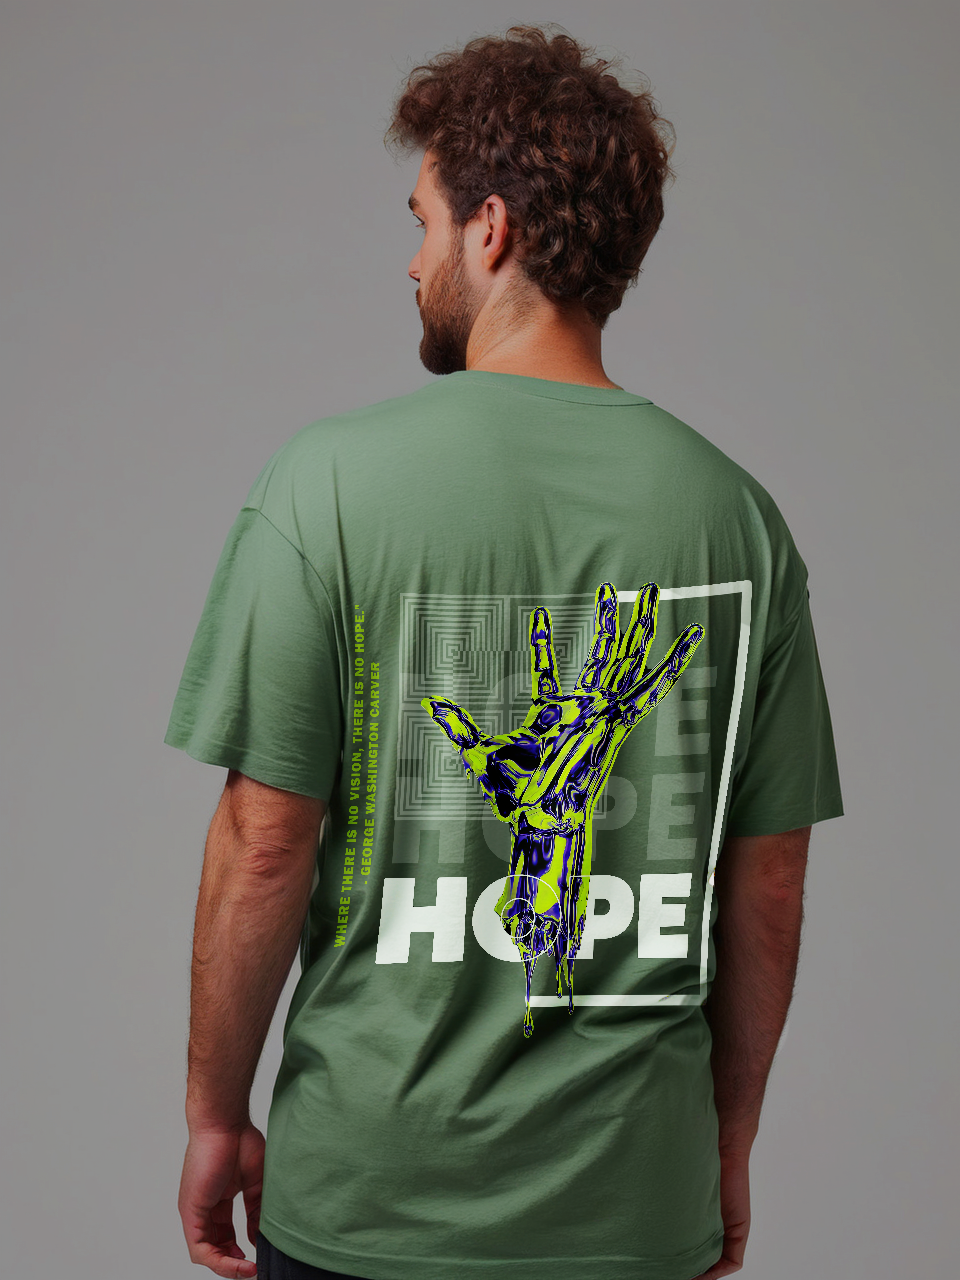 Hope oversize T-shirt, closeup